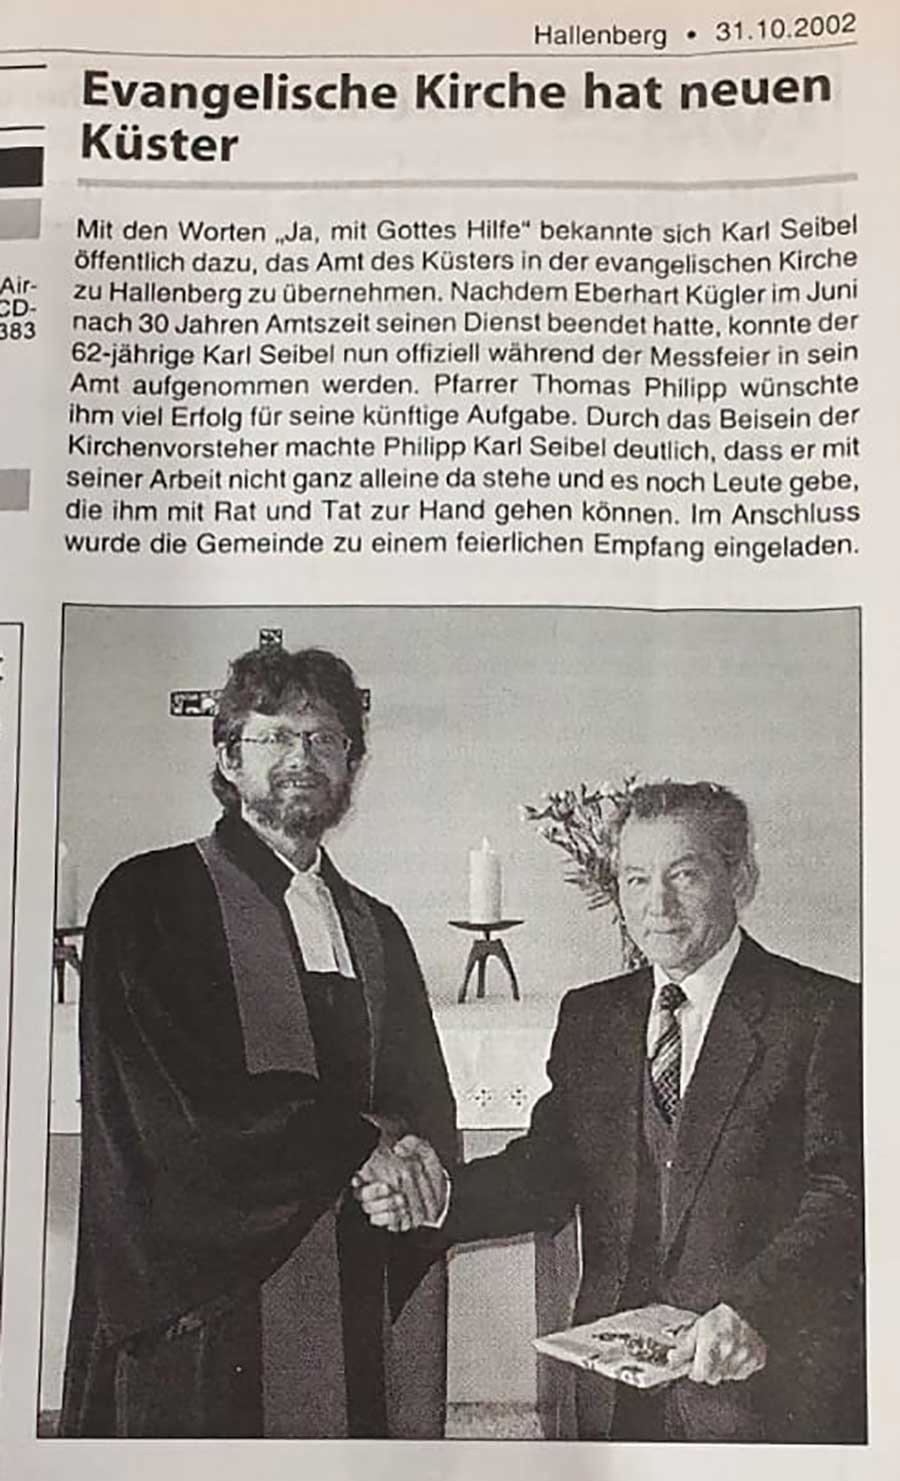 Zeitungsartikel (2002) über Karl Seibel